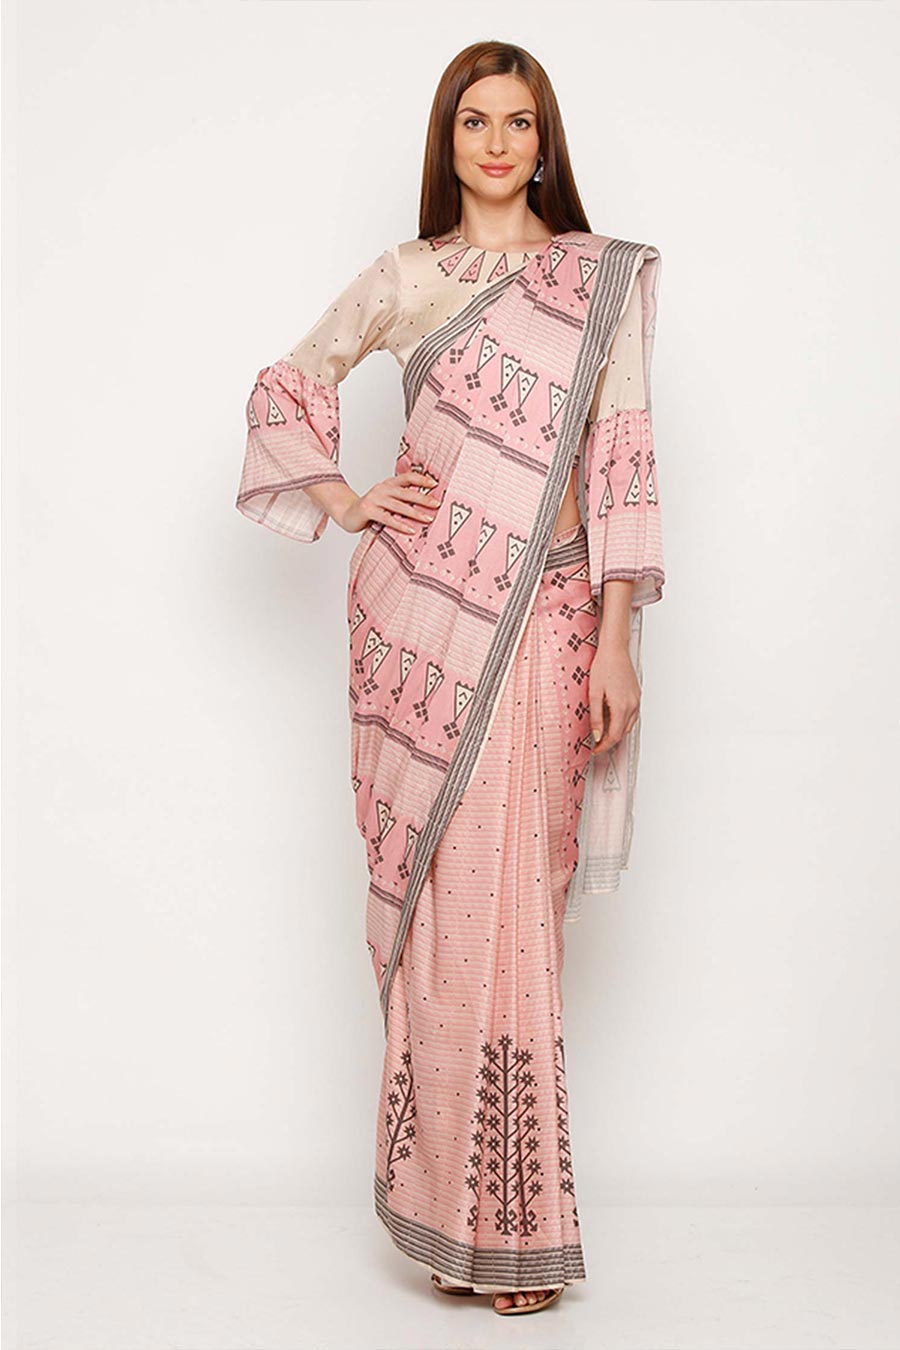 Pixel Printed Pink Saree & Blouse Set